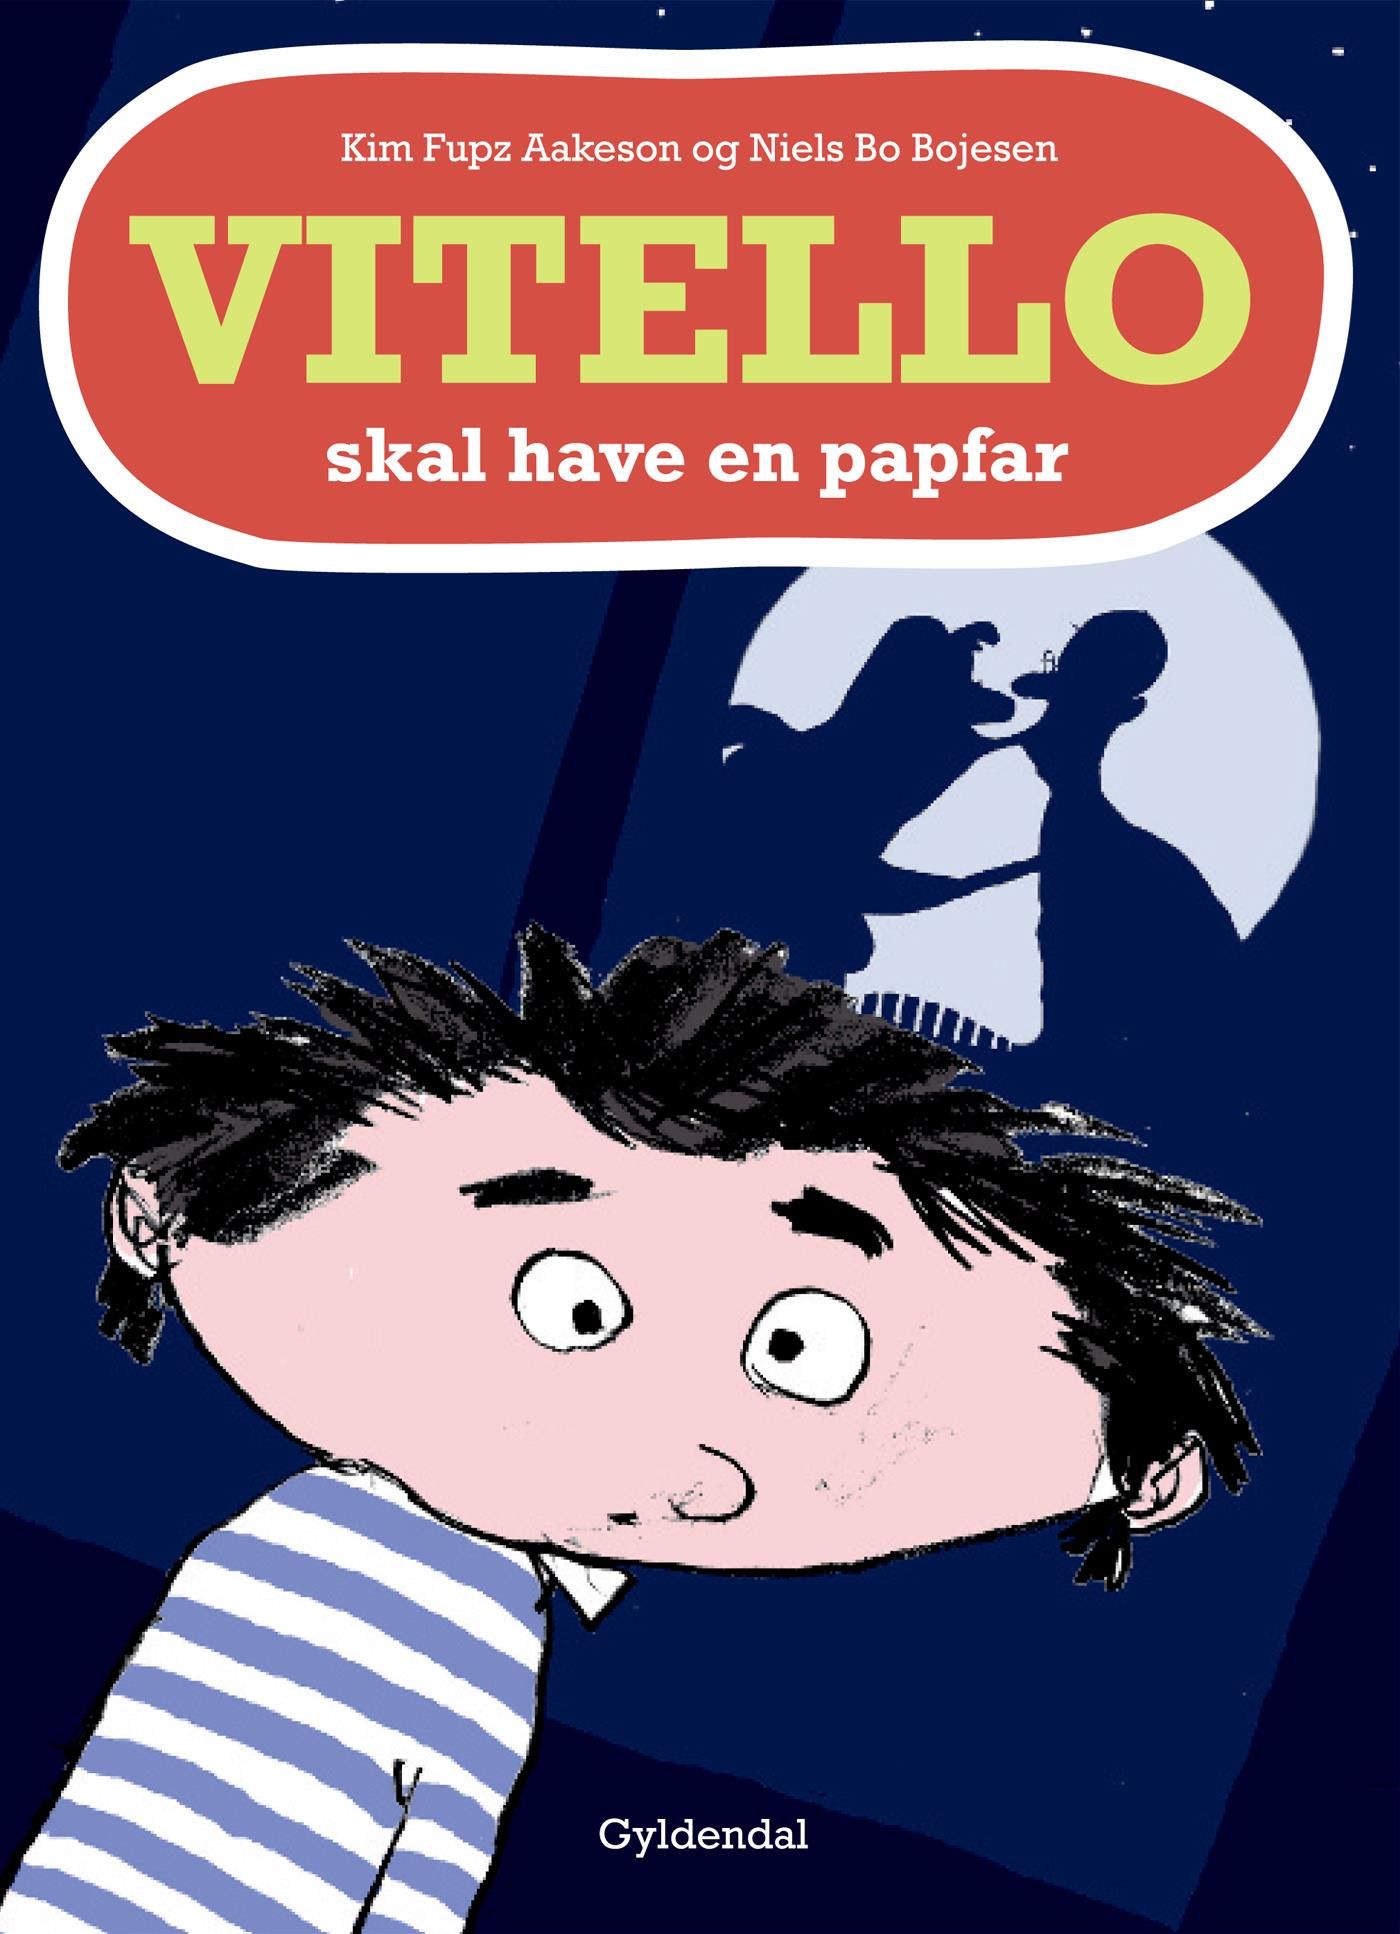 Vitello skal have en papfar - Lyt&læs, e-bok av Niels Bo Bojesen, Kim Fupz Aakeson